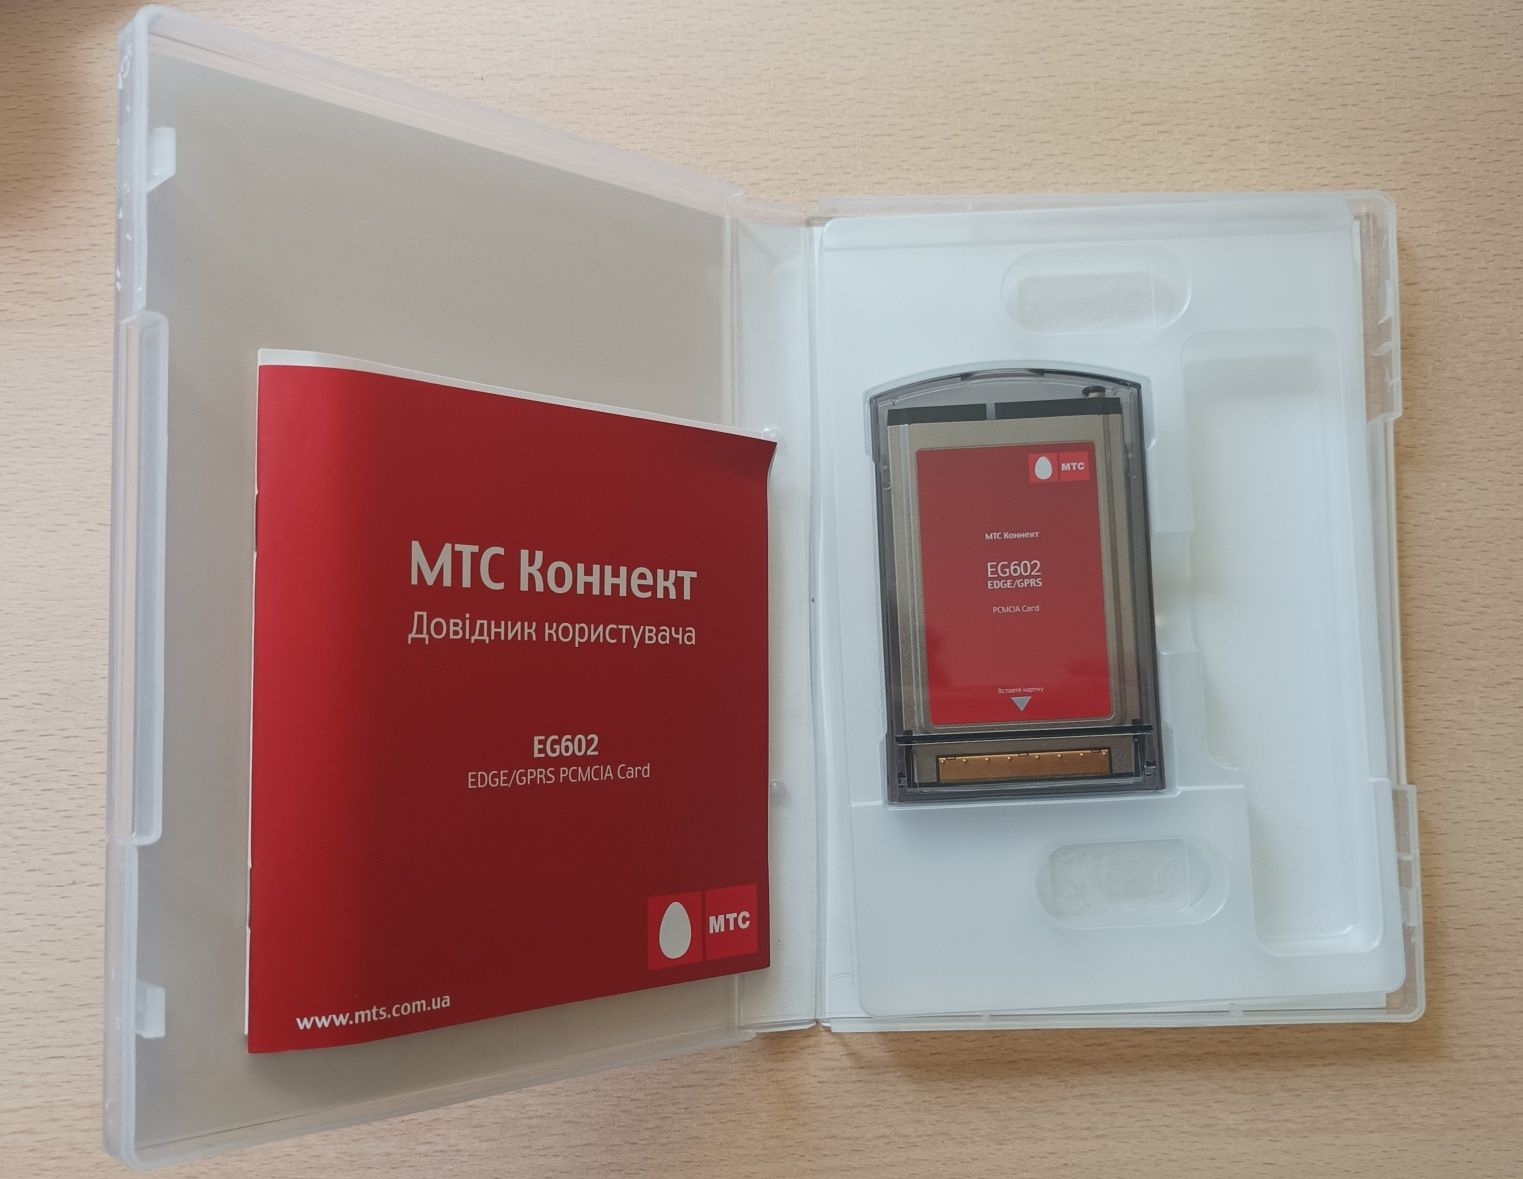 МТС Коннект eg602 для ноутбука EDGE/GPRS PCMCIA card